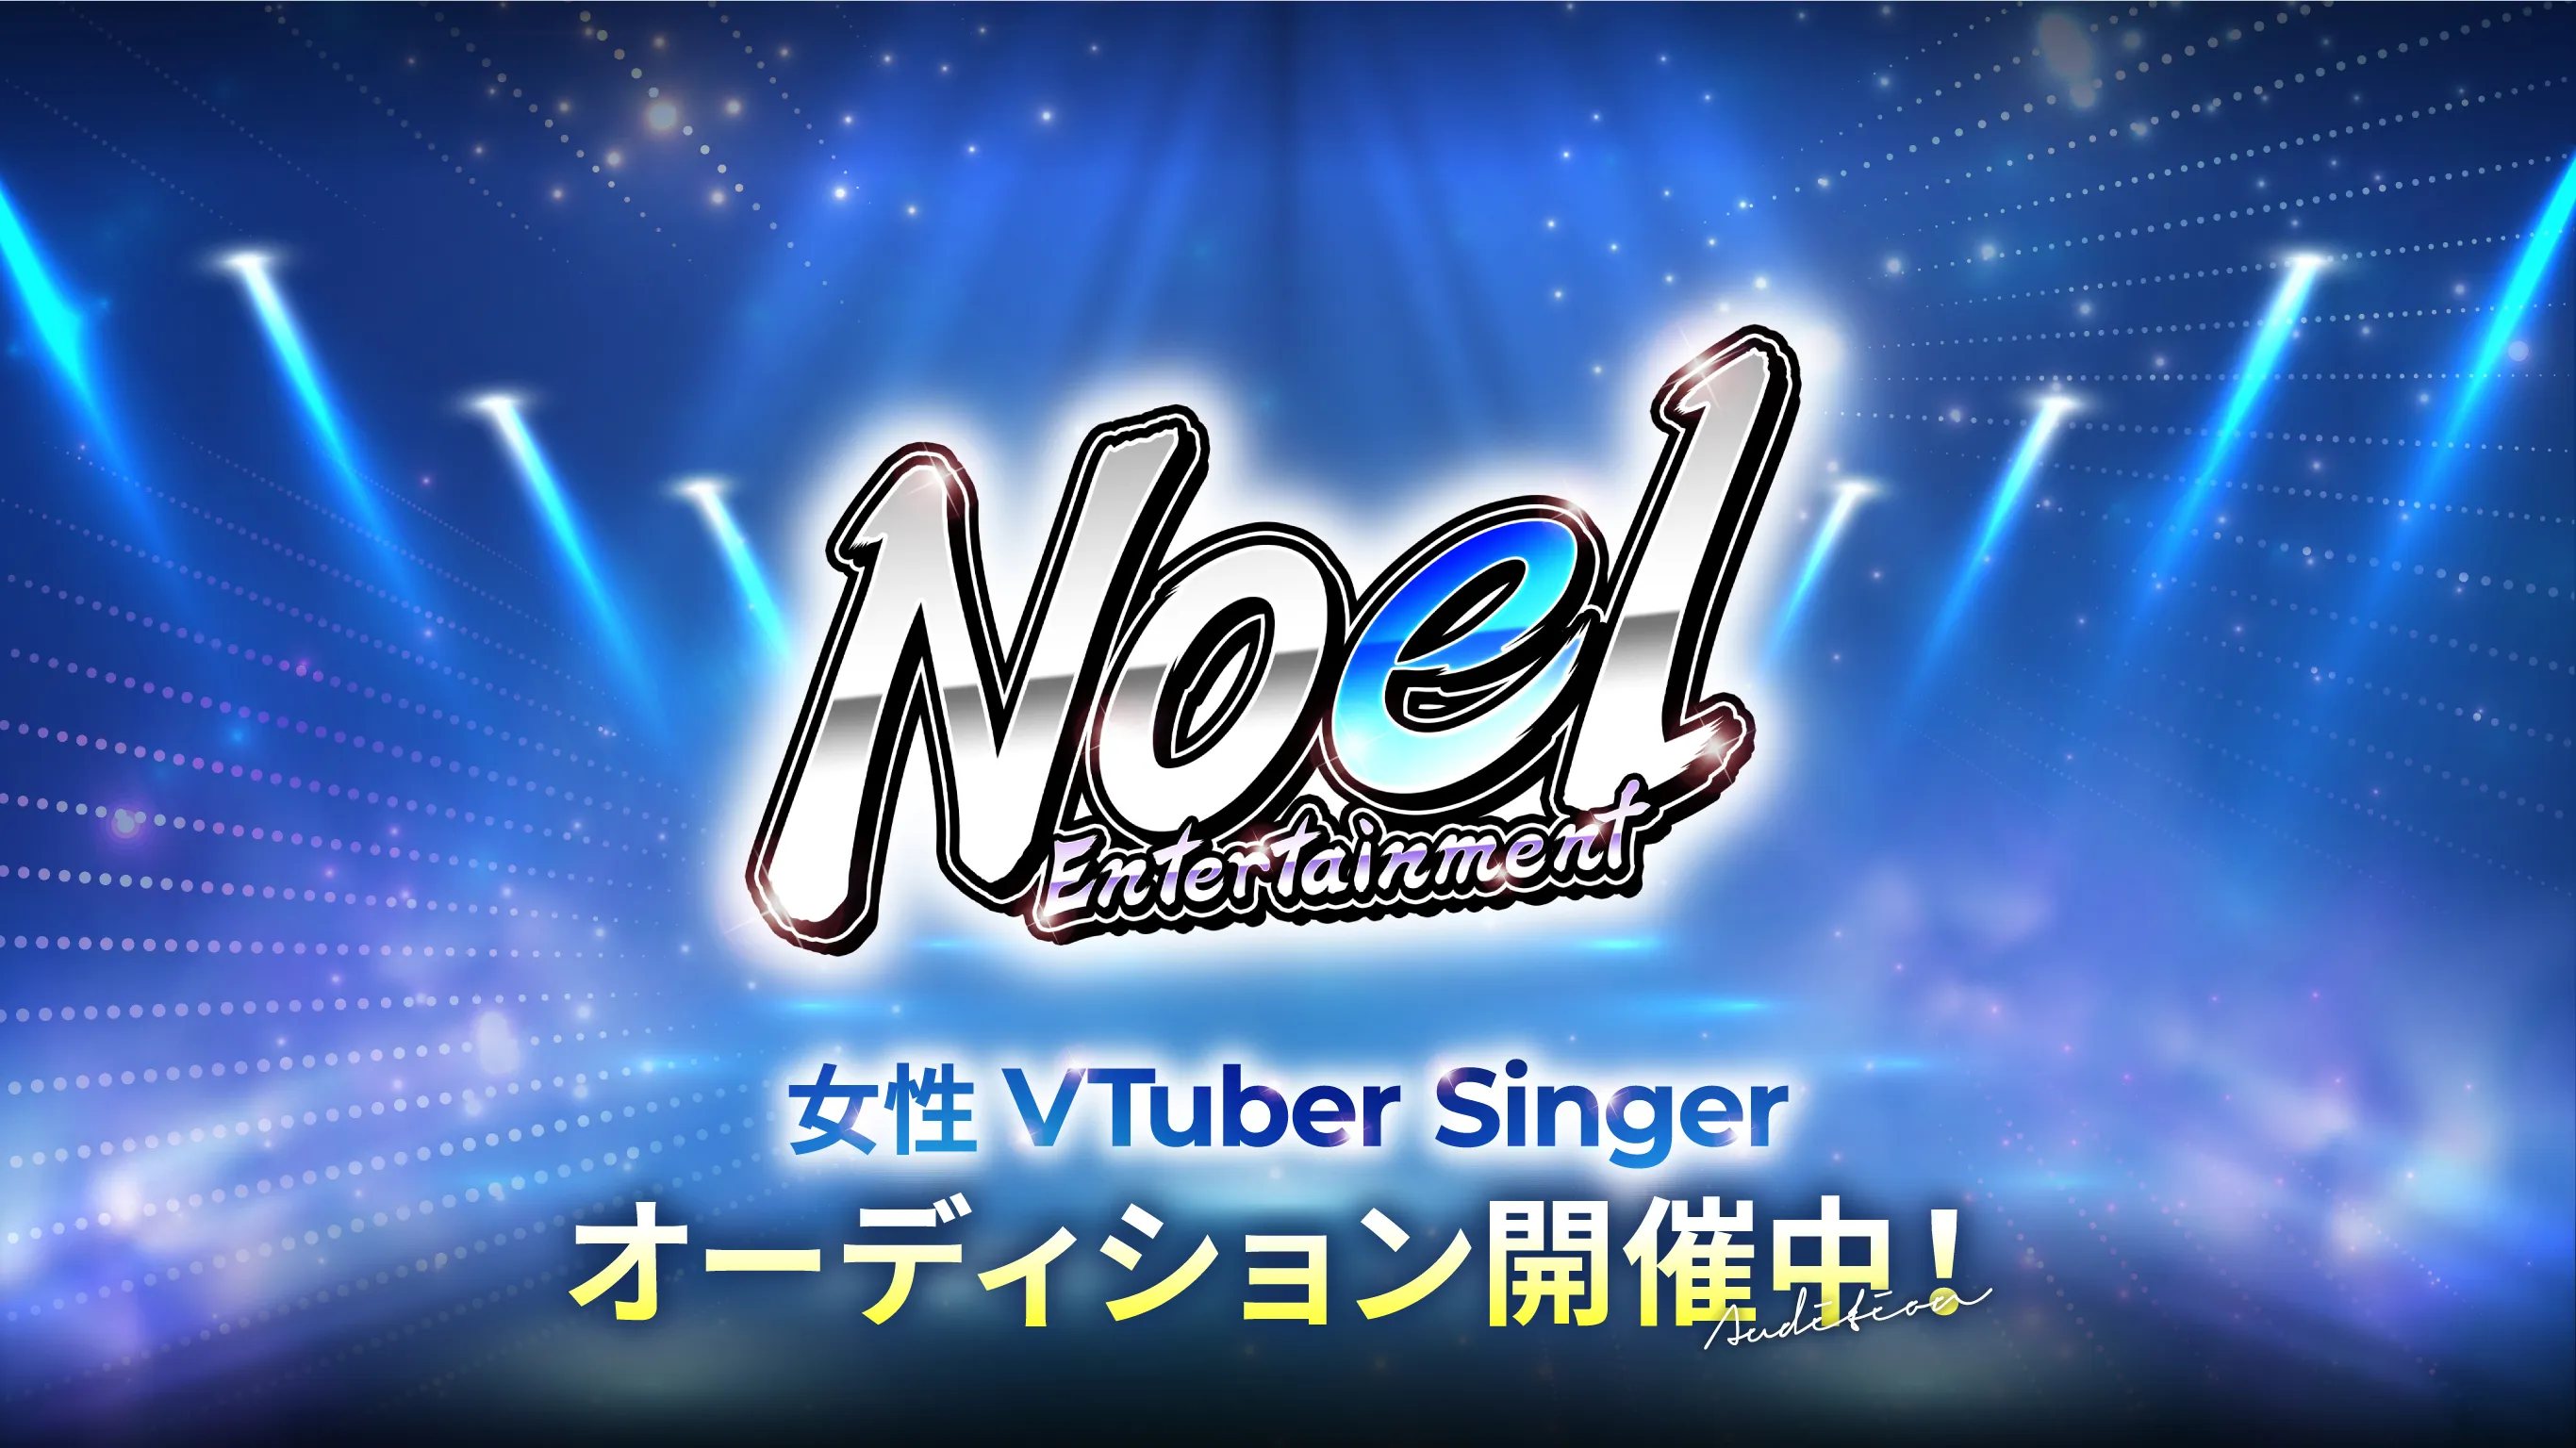 Noel Entertainment 女性VTuber Singer オーディション開催中!